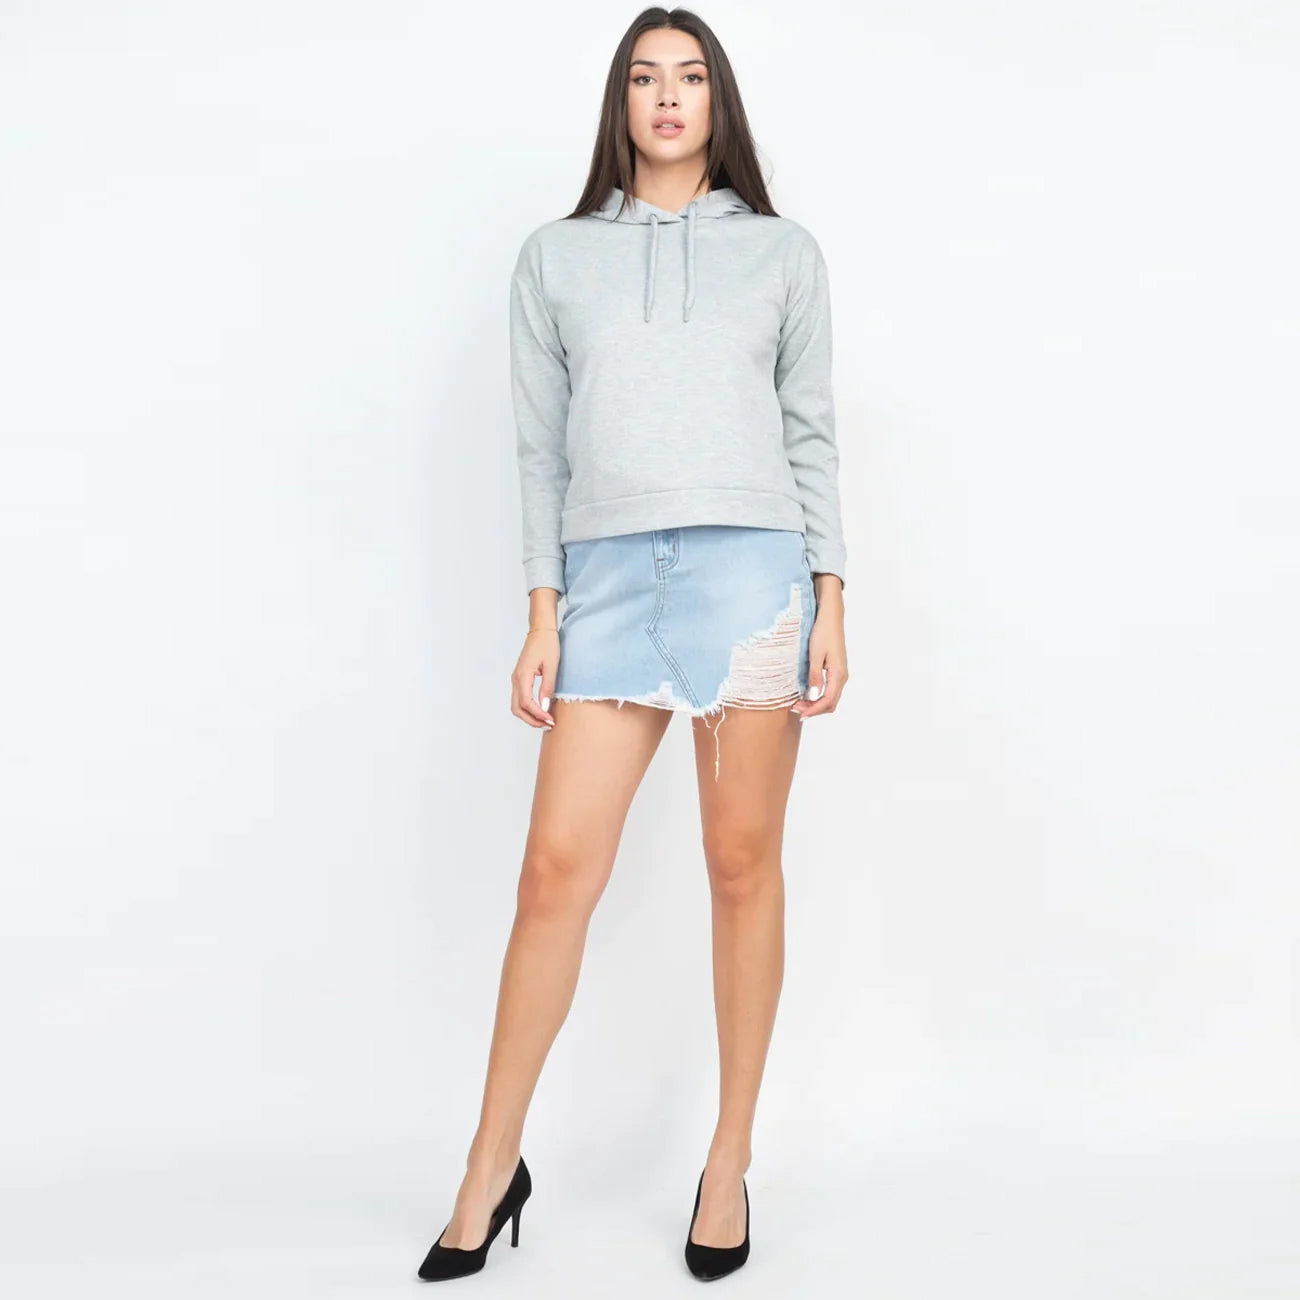 Drawstrings Long Sleeves Hoodied Sweater - Grey